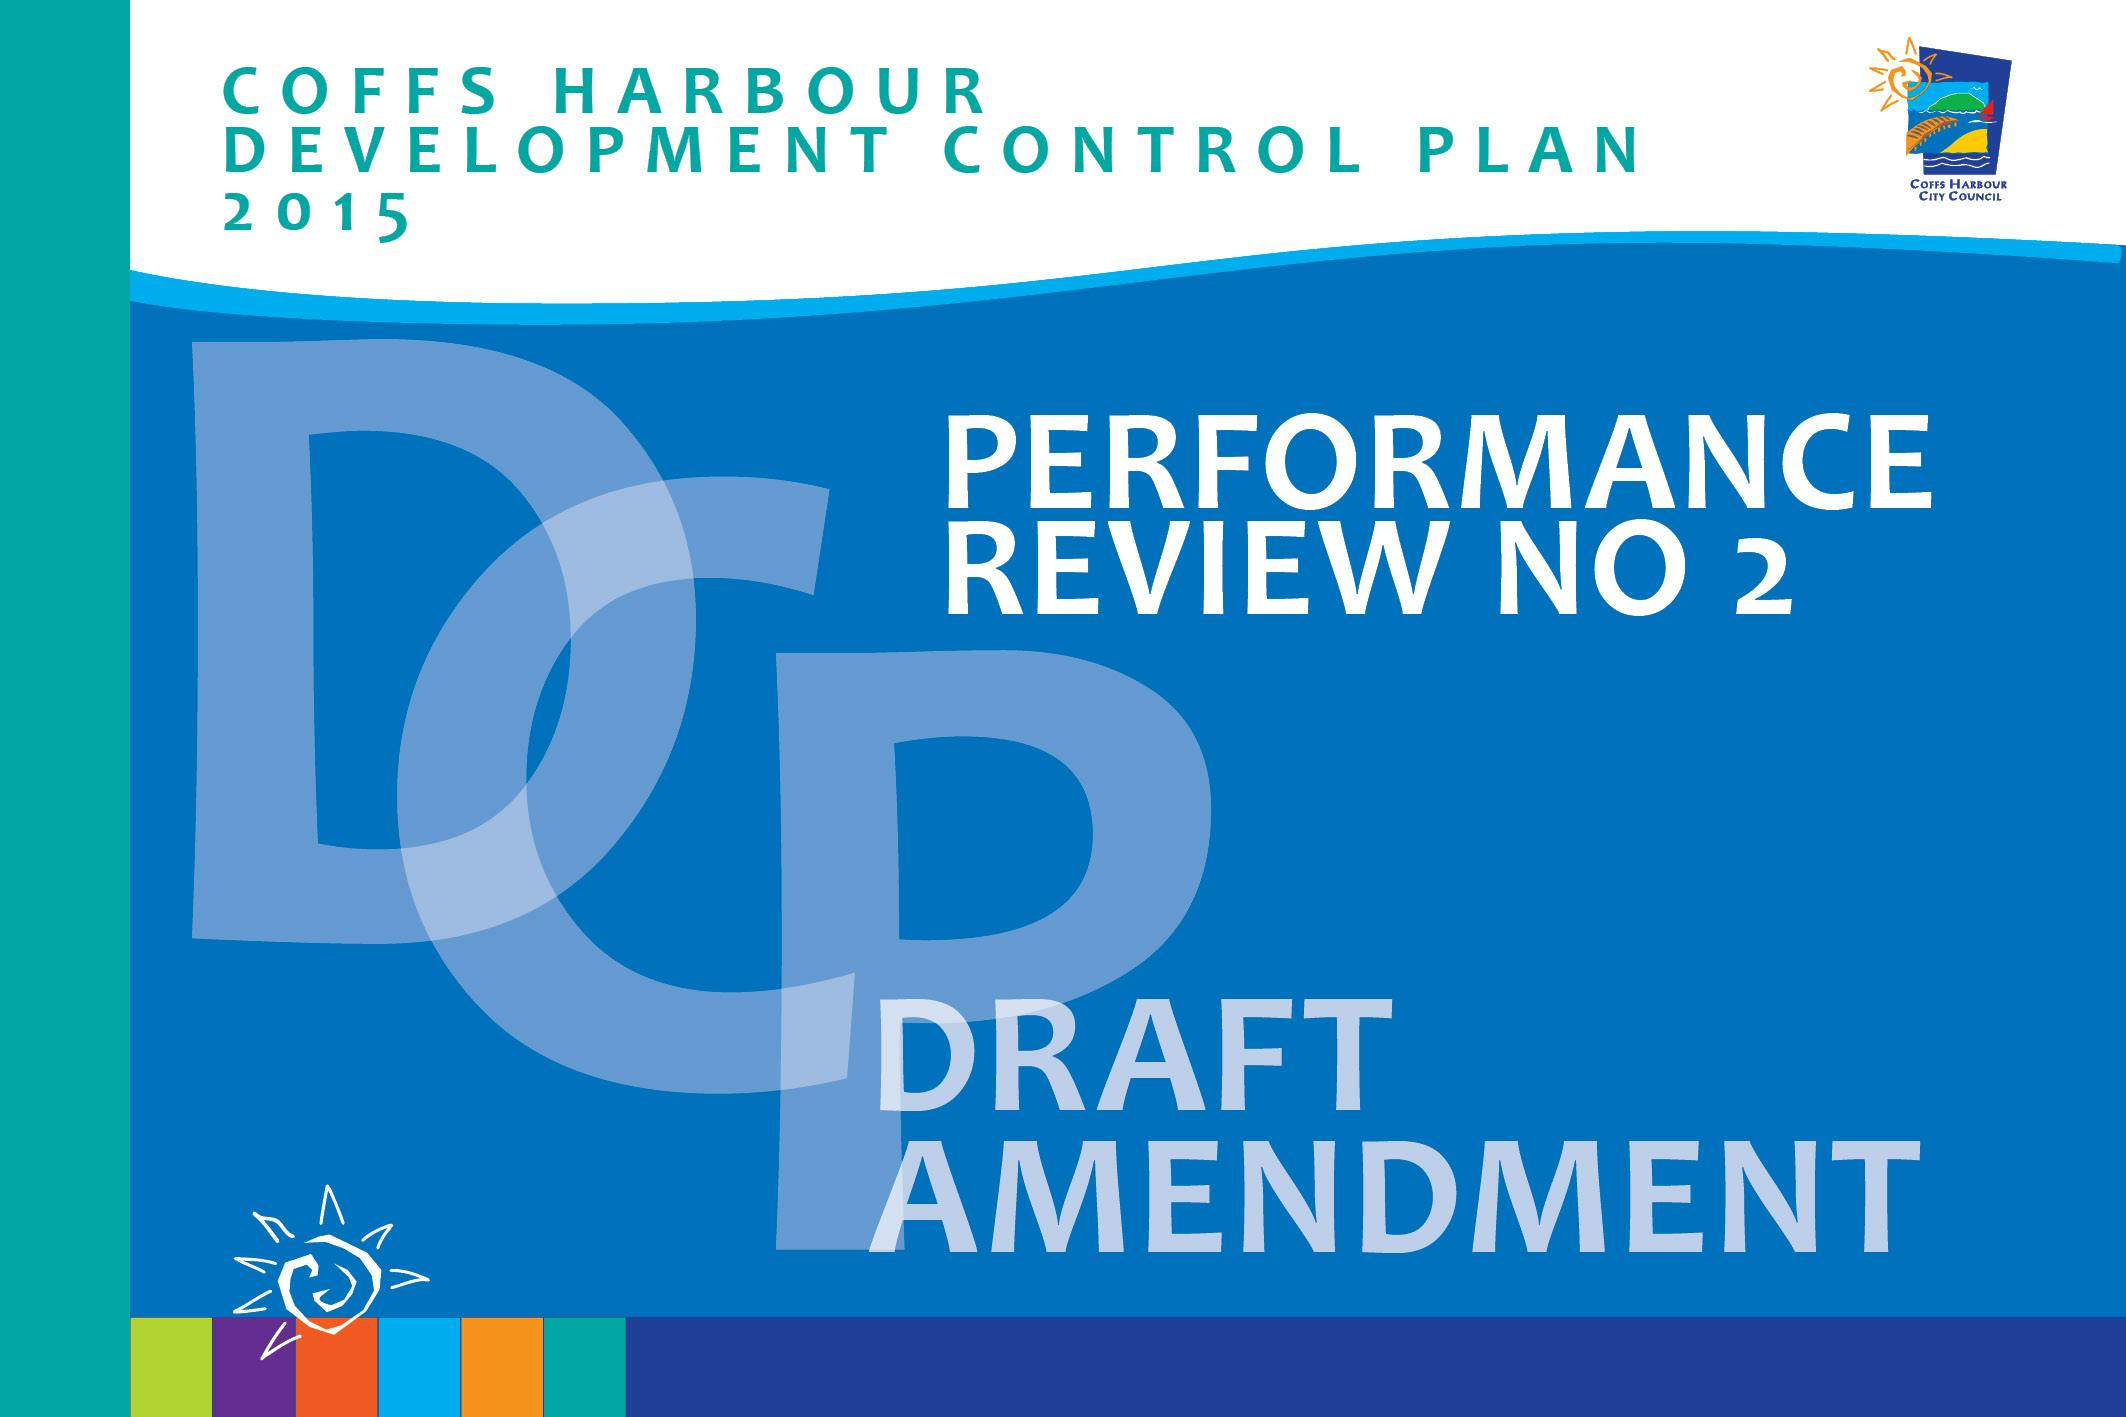 Draft Amendment – Coffs Harbour DCP 2015 – Performance Review No 2